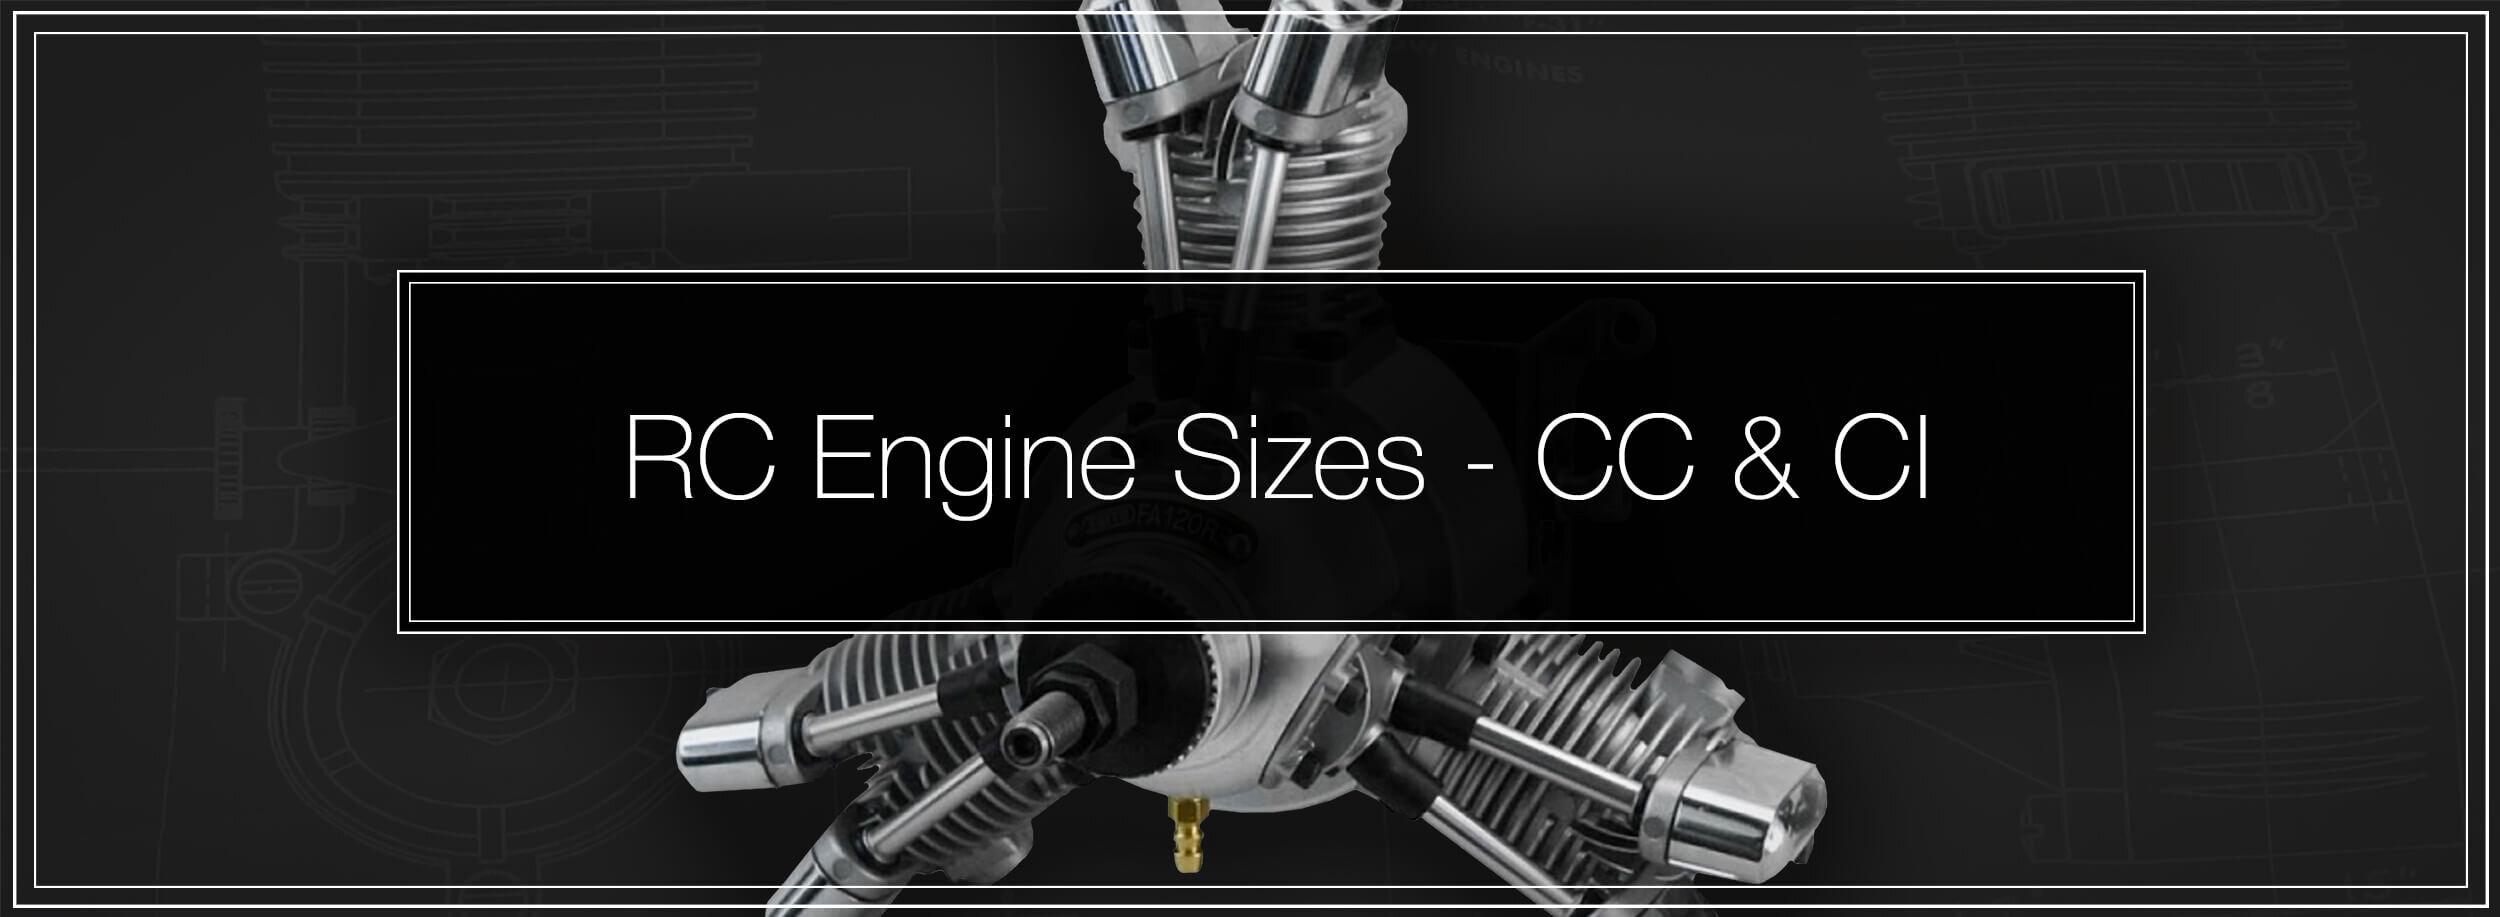 Nitro Plane Engine: Comparing Sizes and Power of Nitro Plane Engines